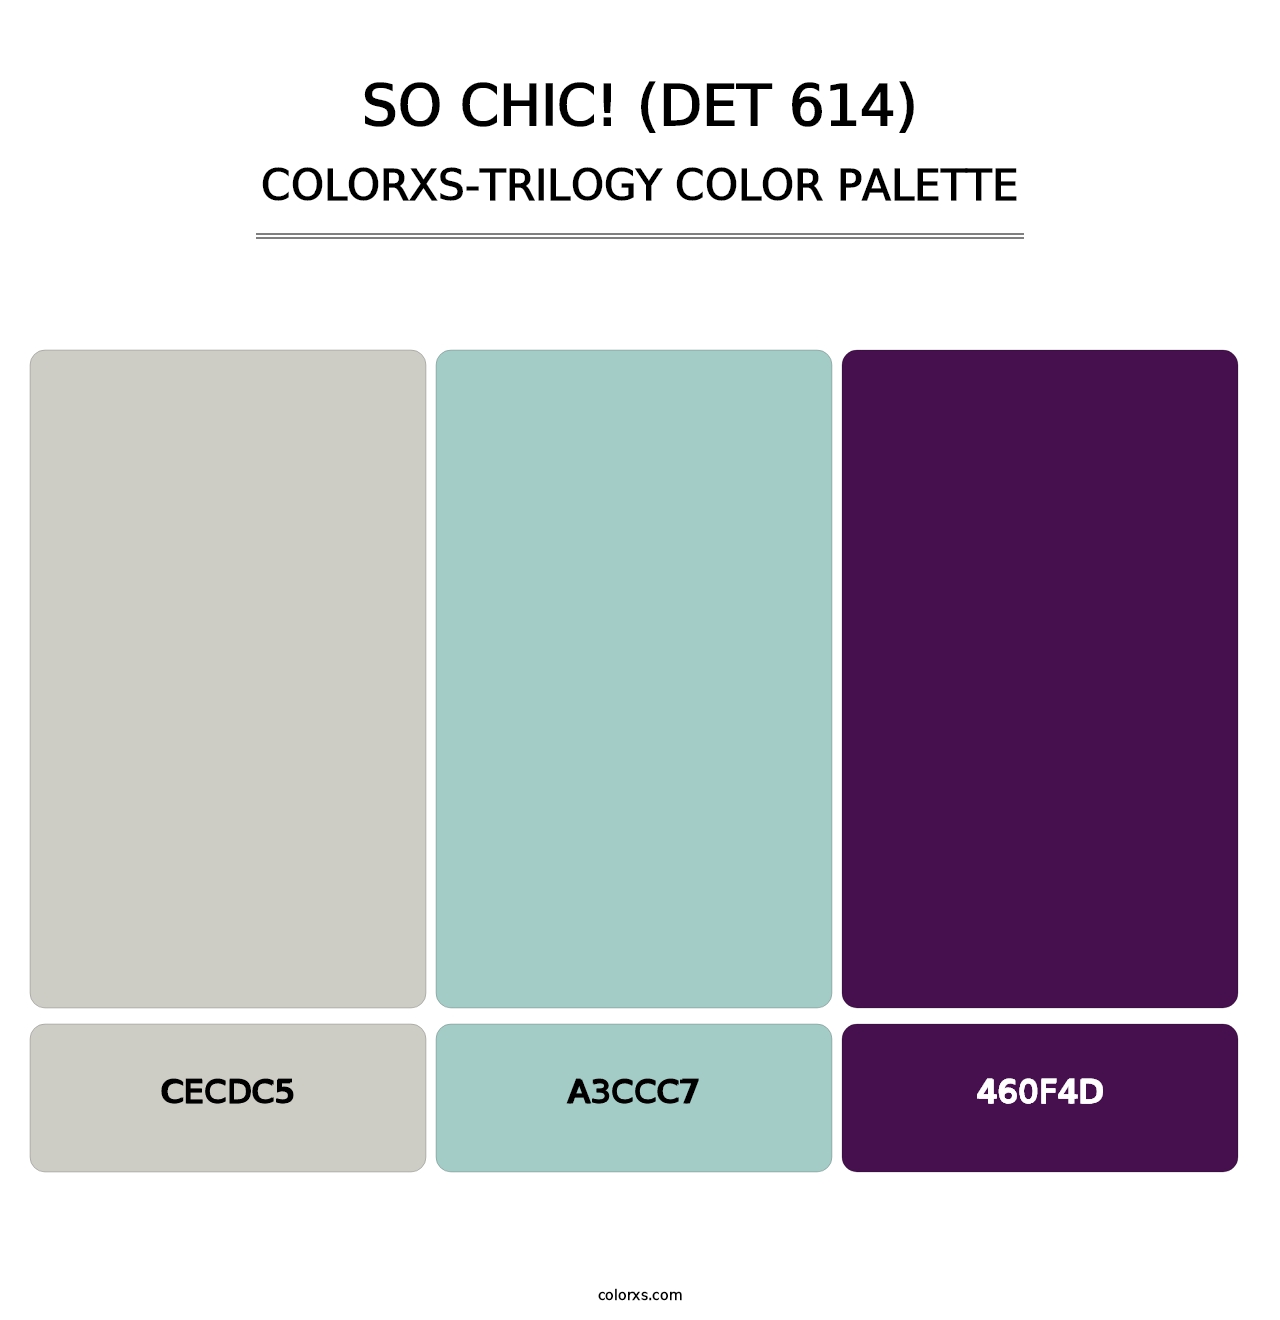 So Chic! (DET 614) - Colorxs Trilogy Palette